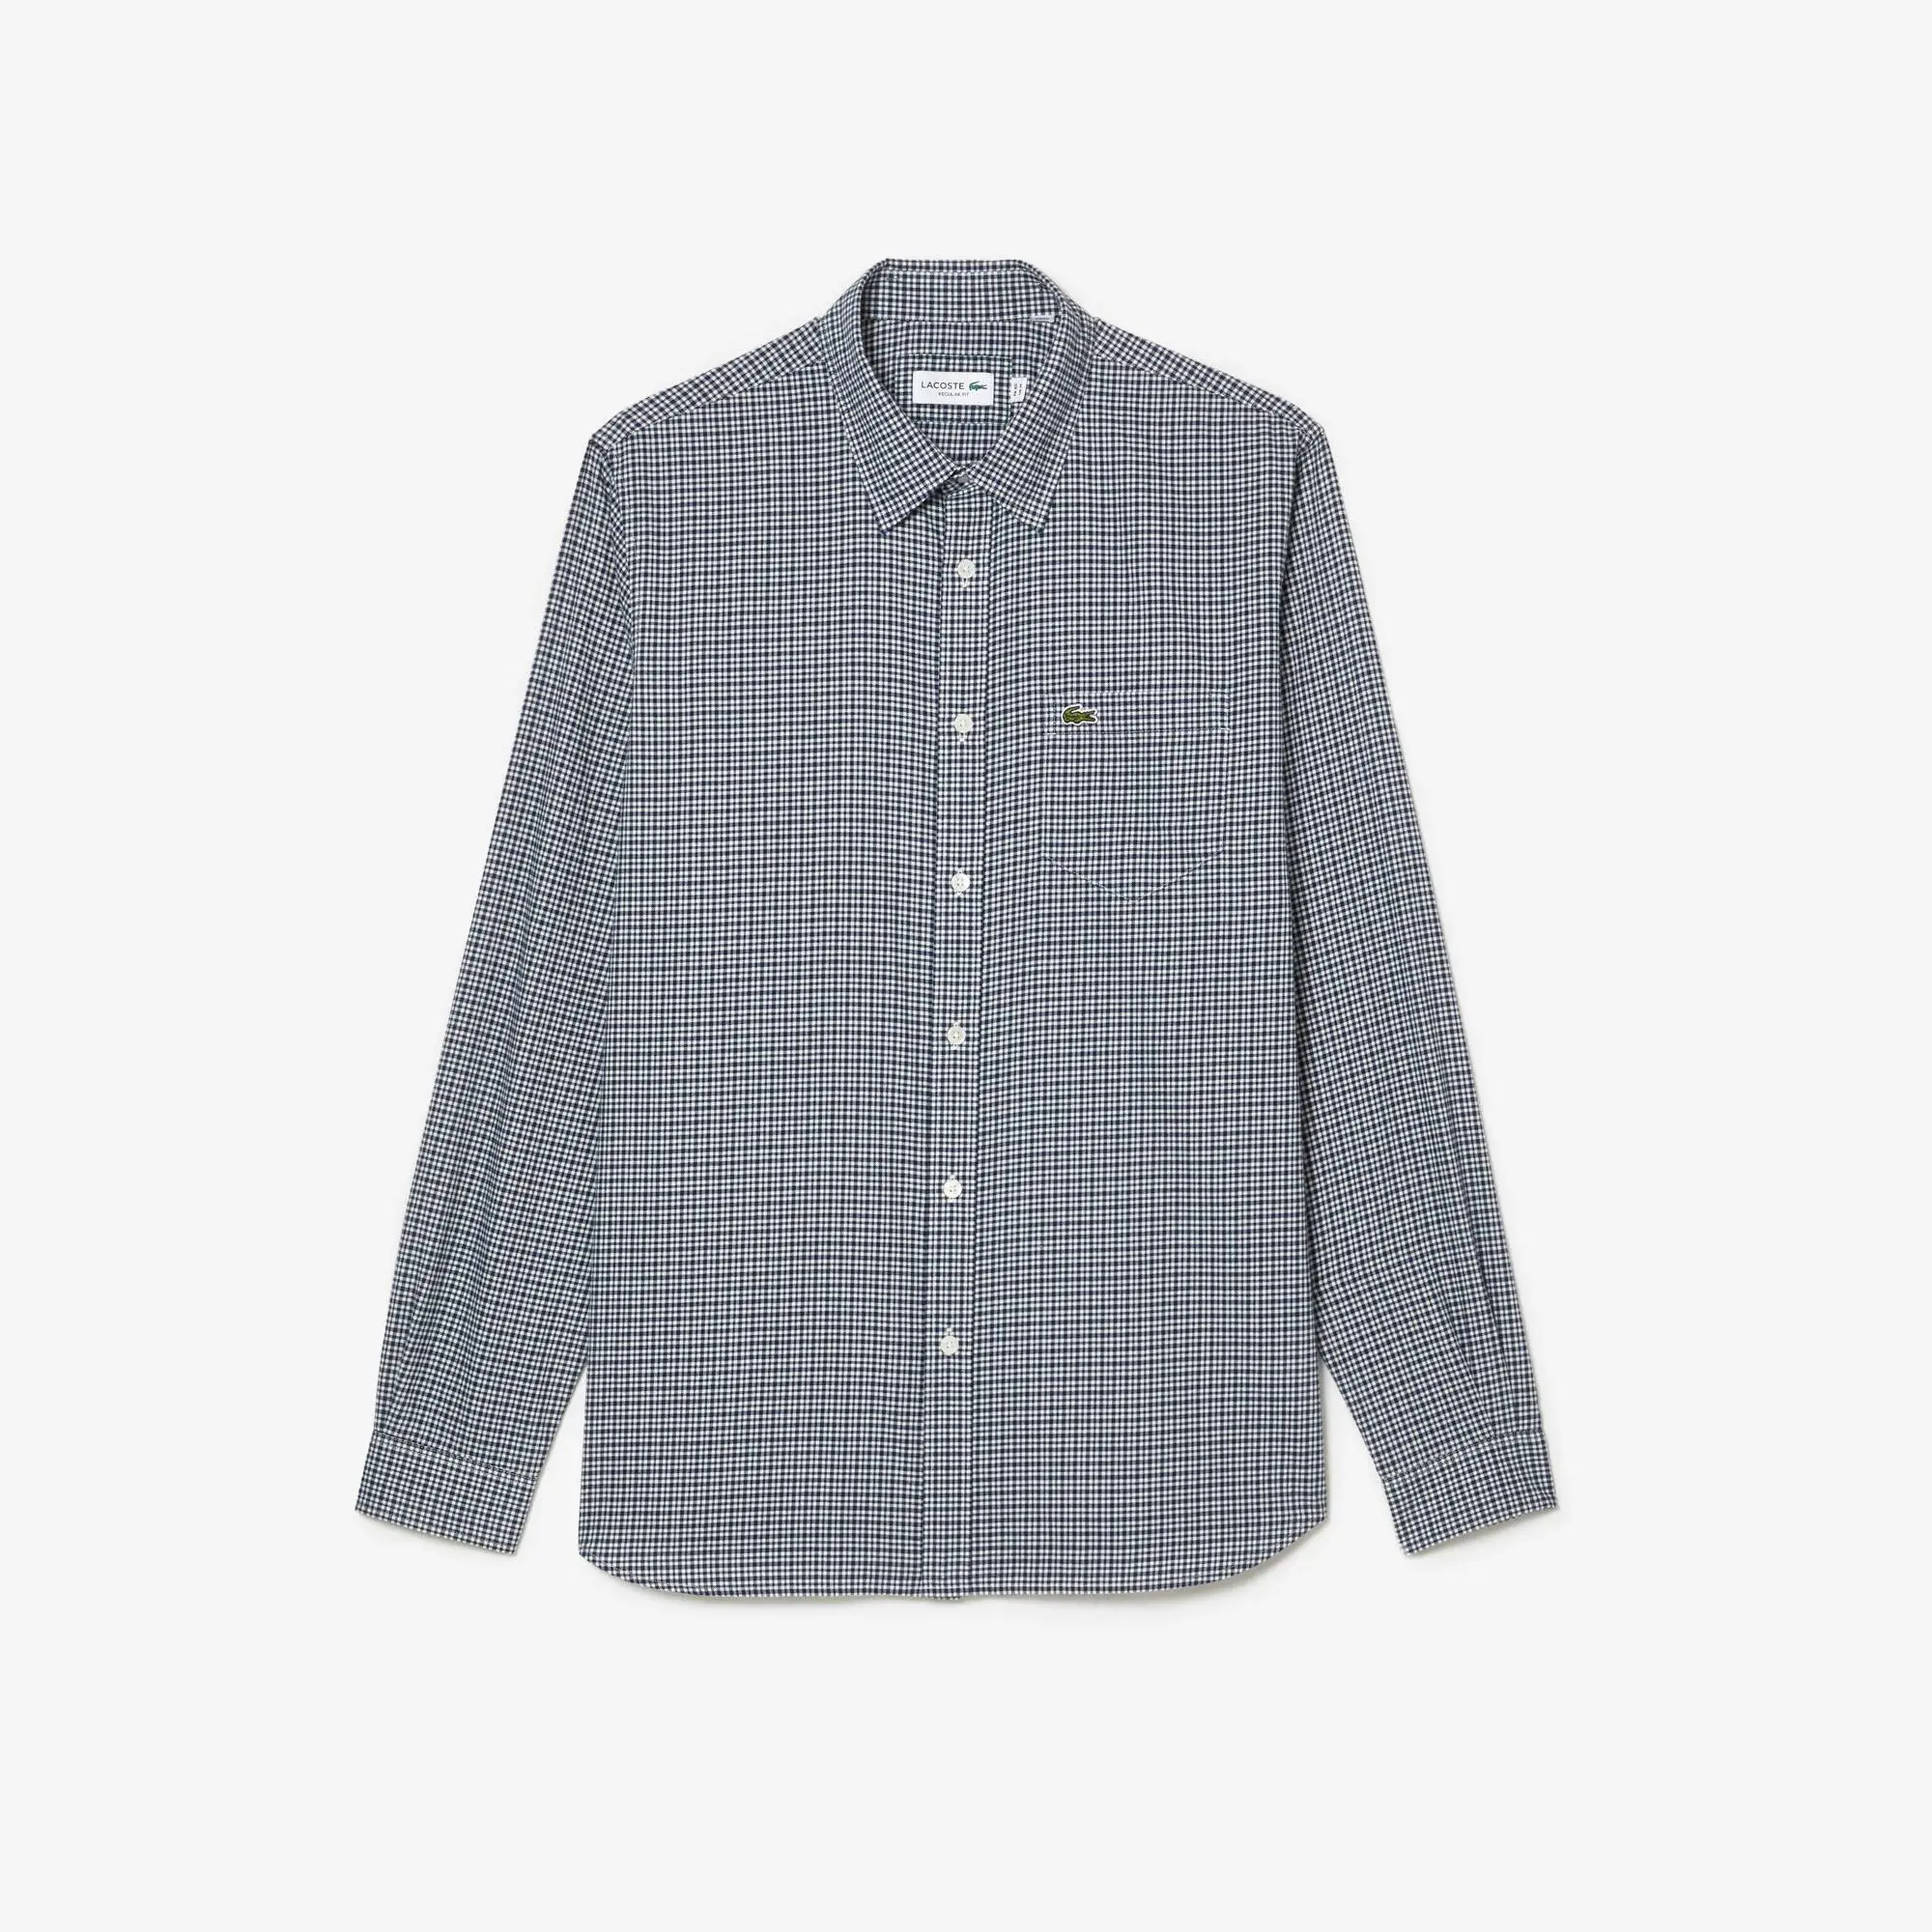 Lacoste Men's Cotton Flannel Shirt. 2